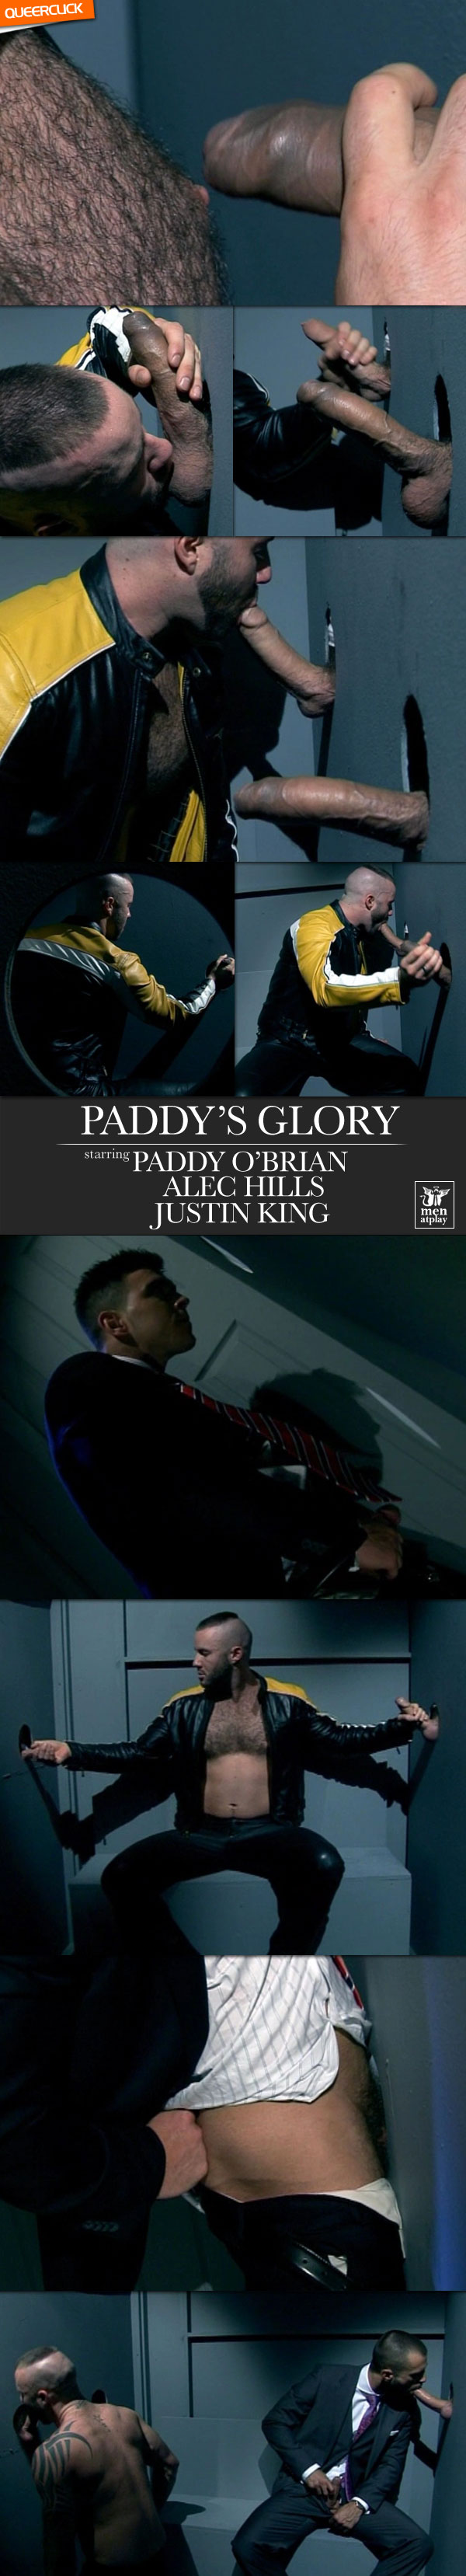 Men At Play: Paddy's Glory - Paddy O'Brian, Alec Hills and Justin King